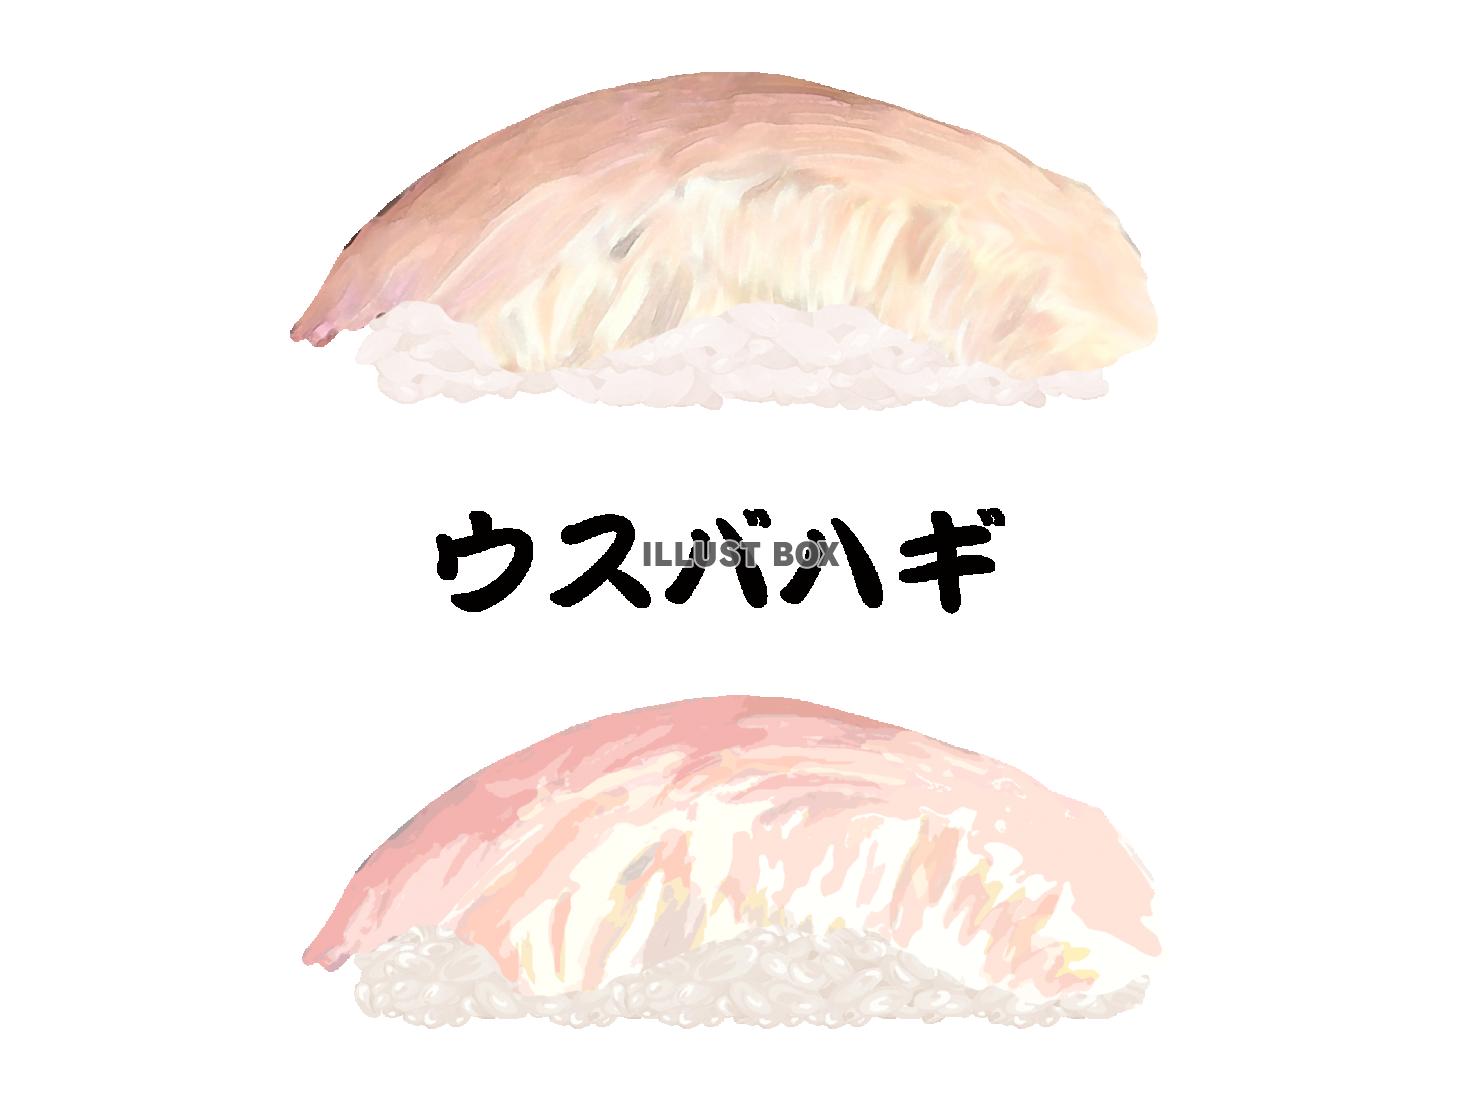  寿司-ウスバハギ